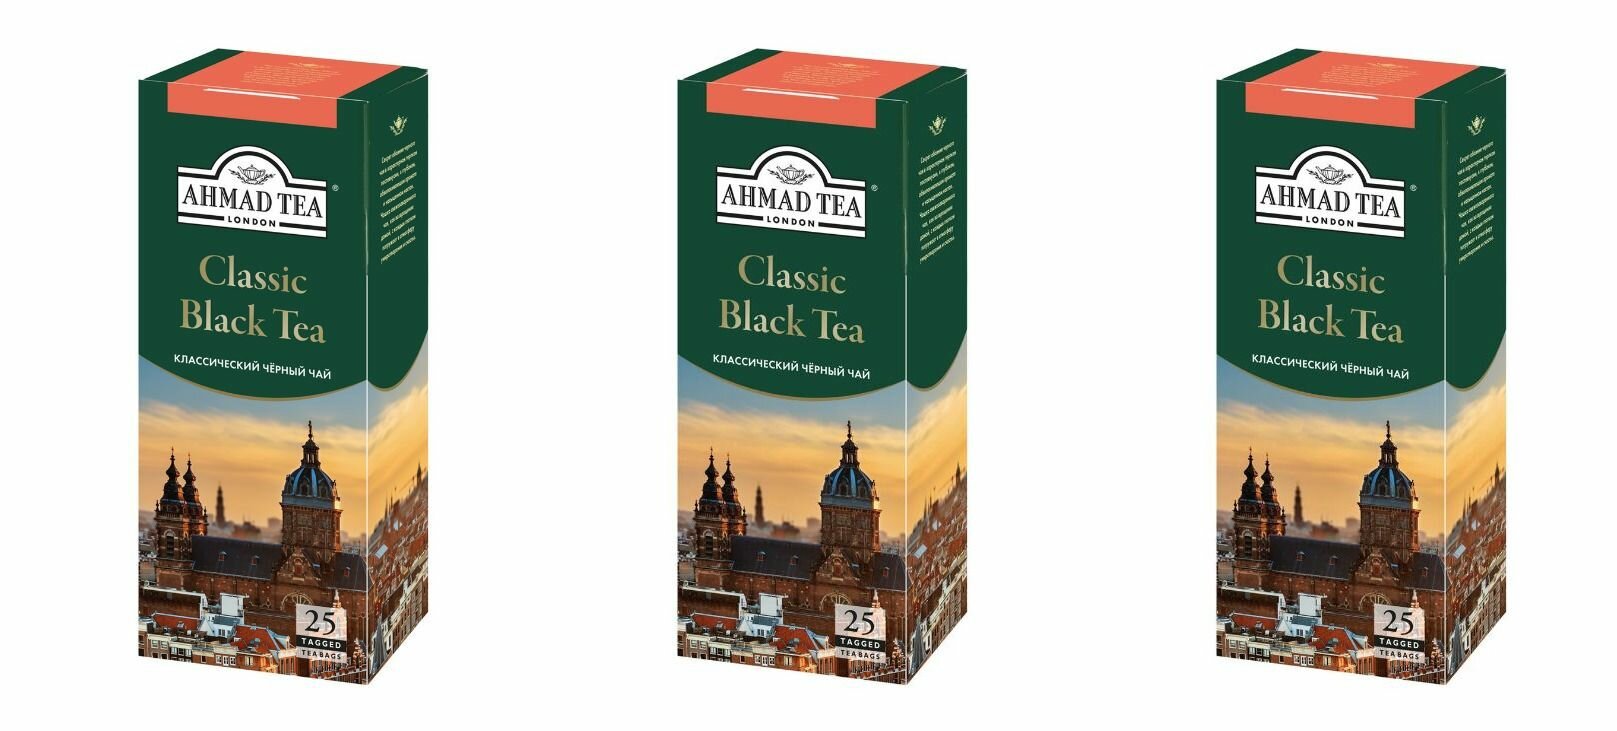 Ahmad Tea Чай черный в пакетиках Классический, 25 штук по 2 г, 3 шт